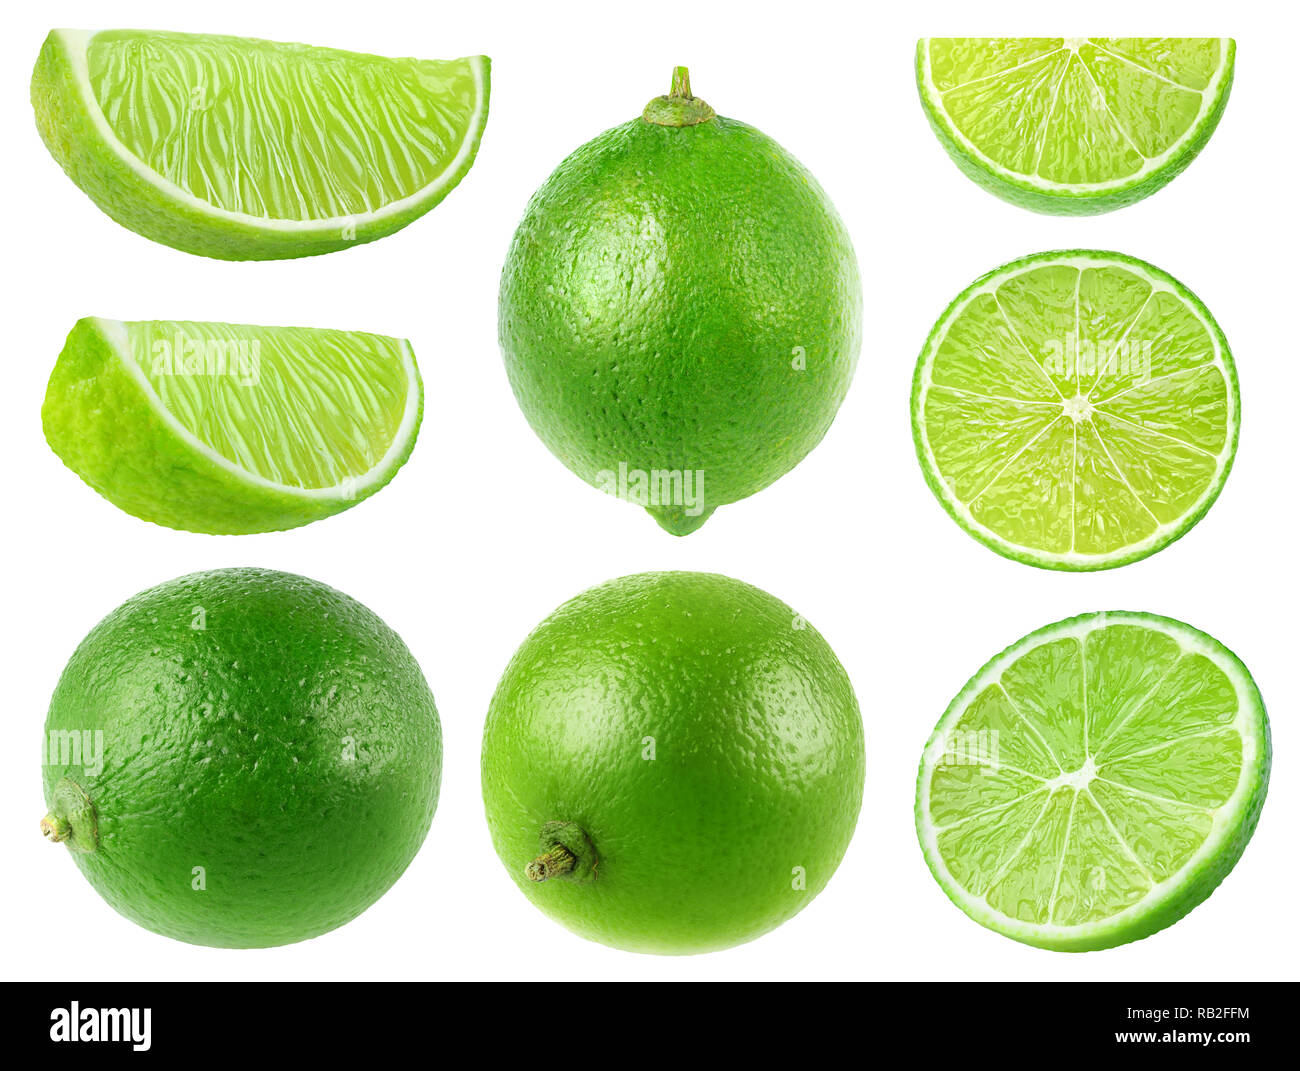 Limes isolés. Collection de fruits entiers et de chaux isolé sur fond blanc avec clipping path Banque D'Images